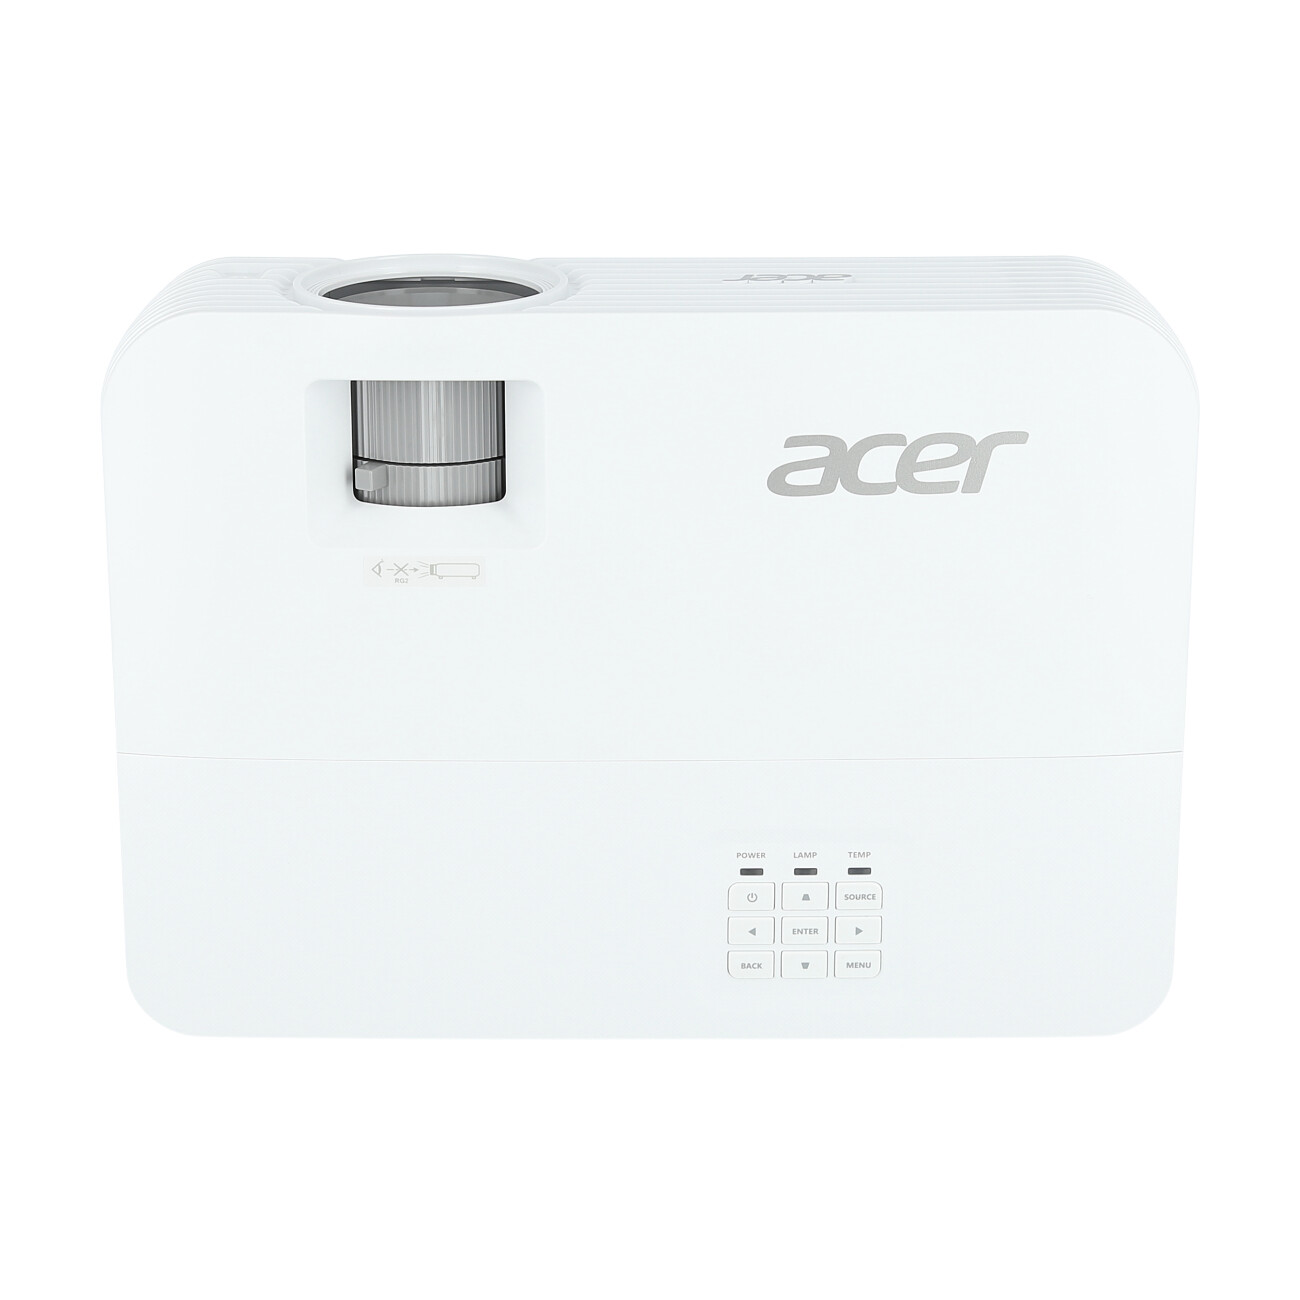 Acer-H6815BD